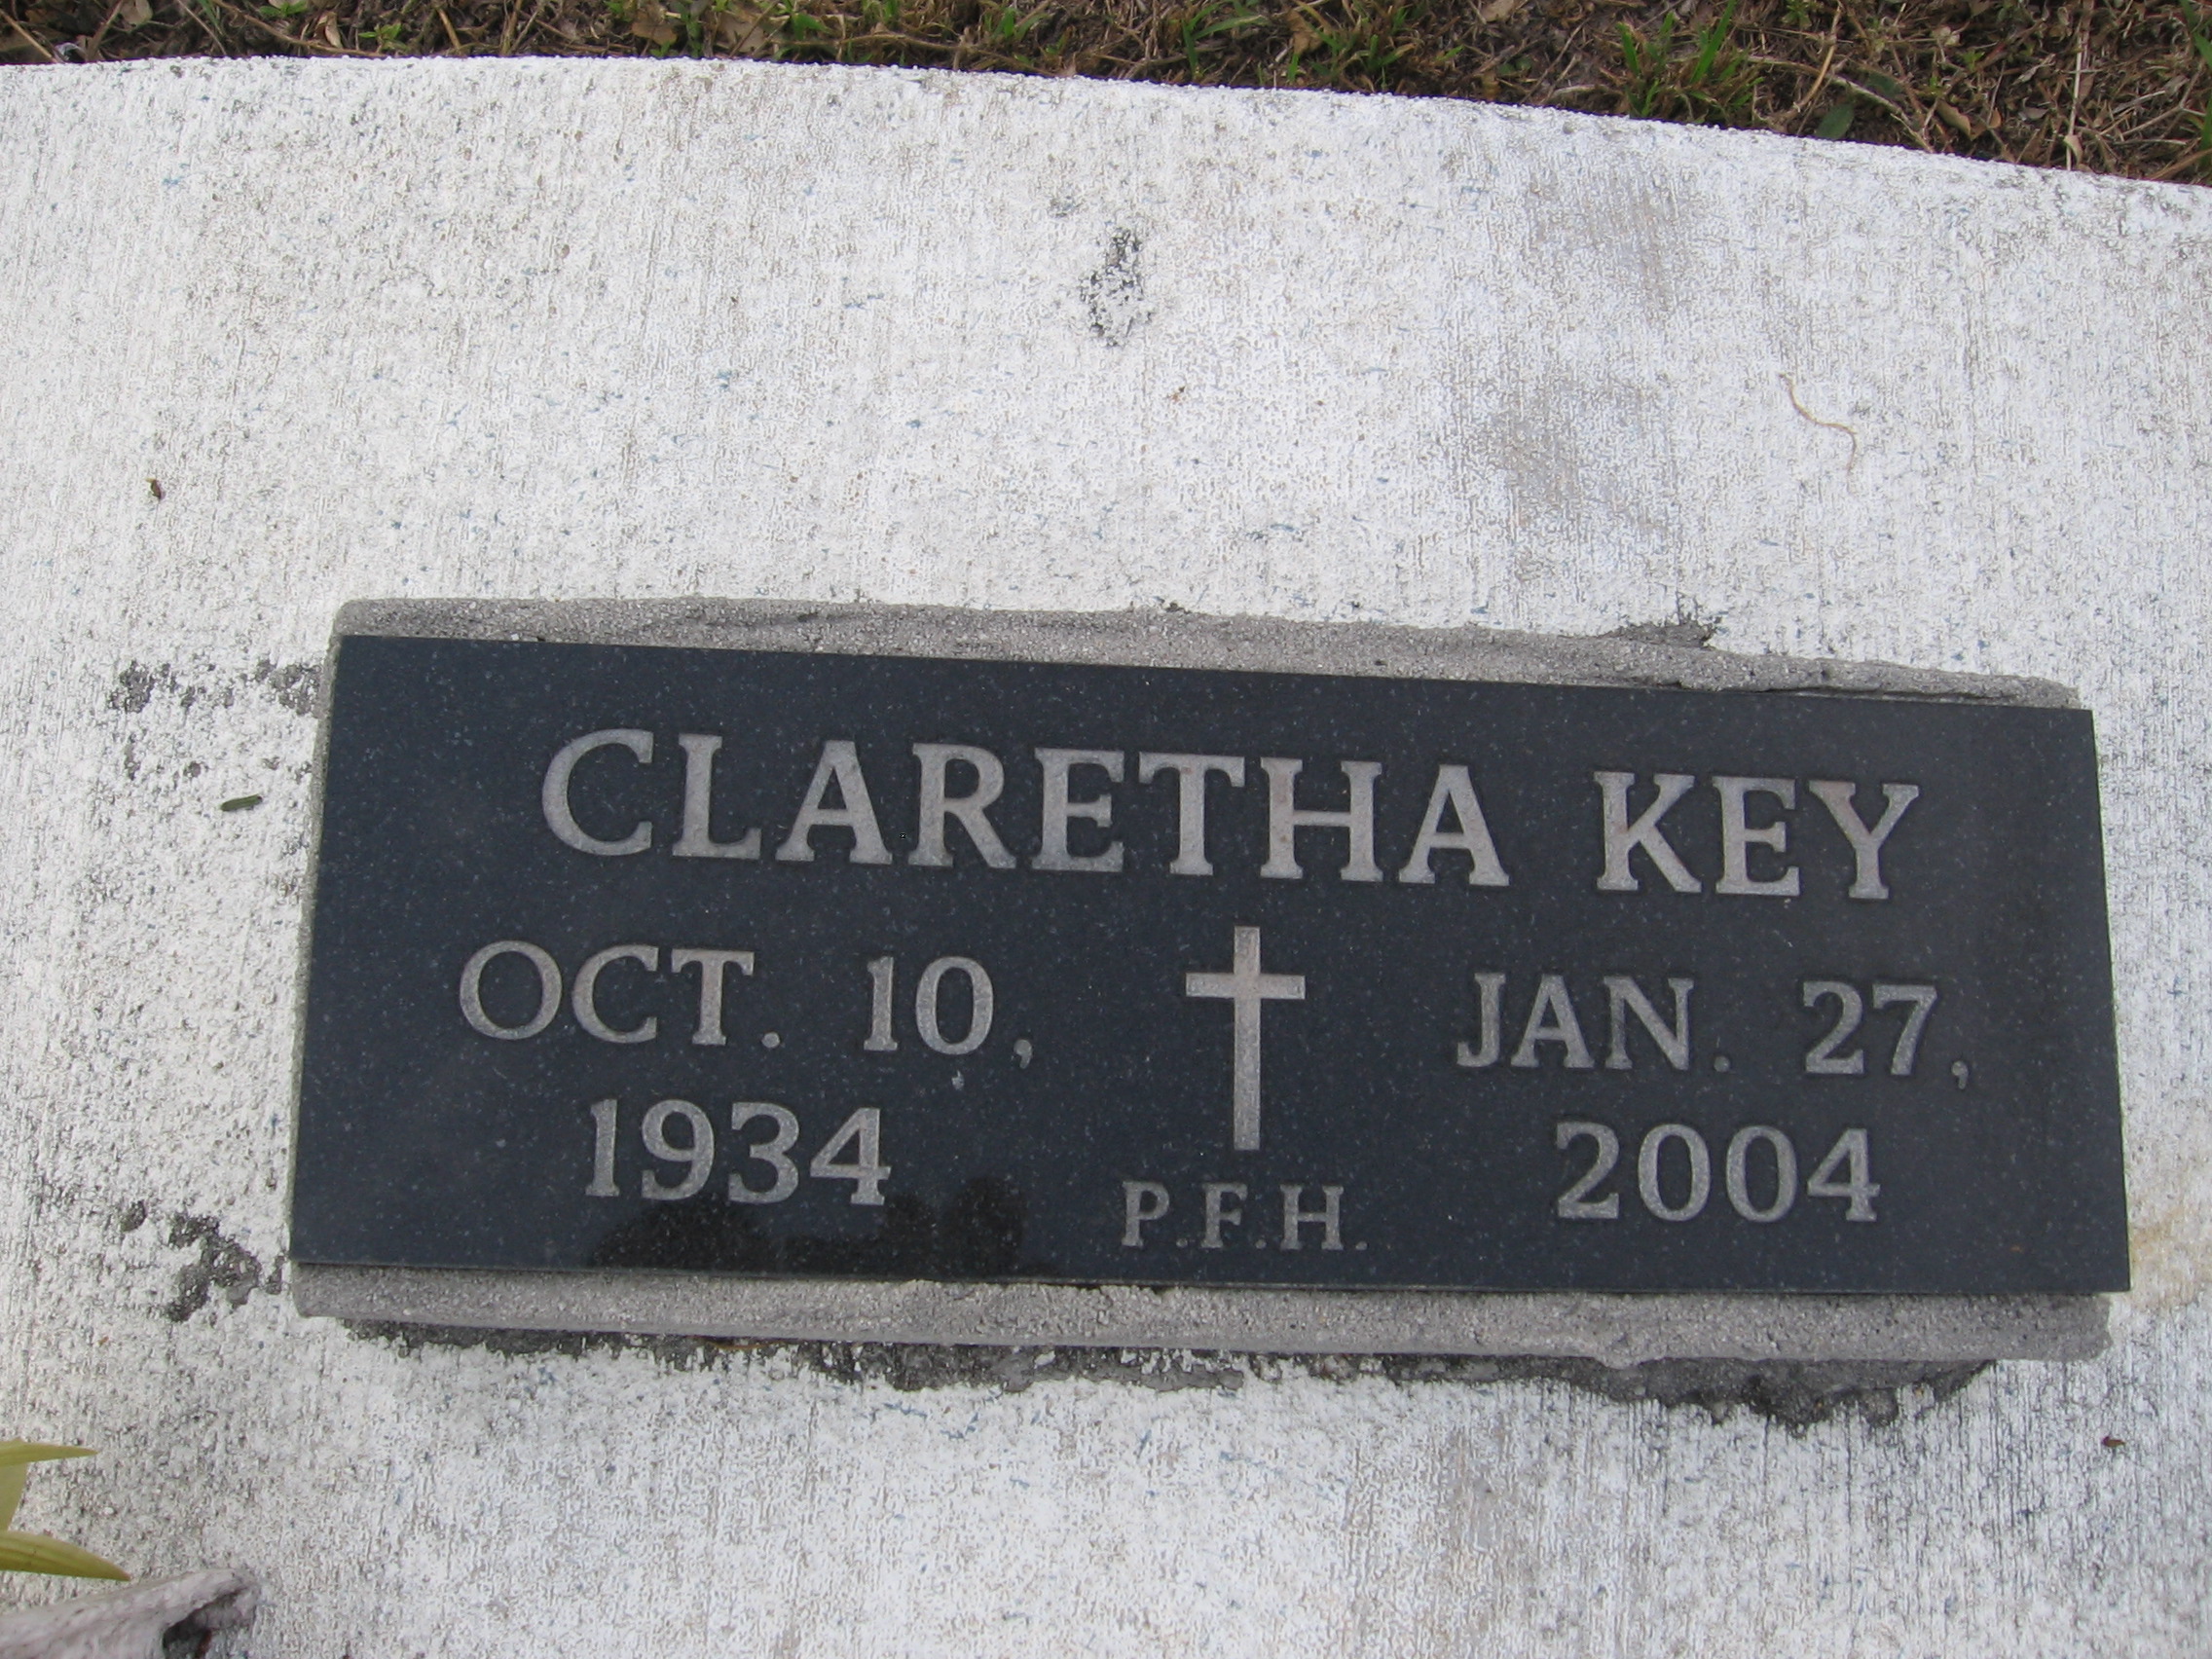 Claretha Key